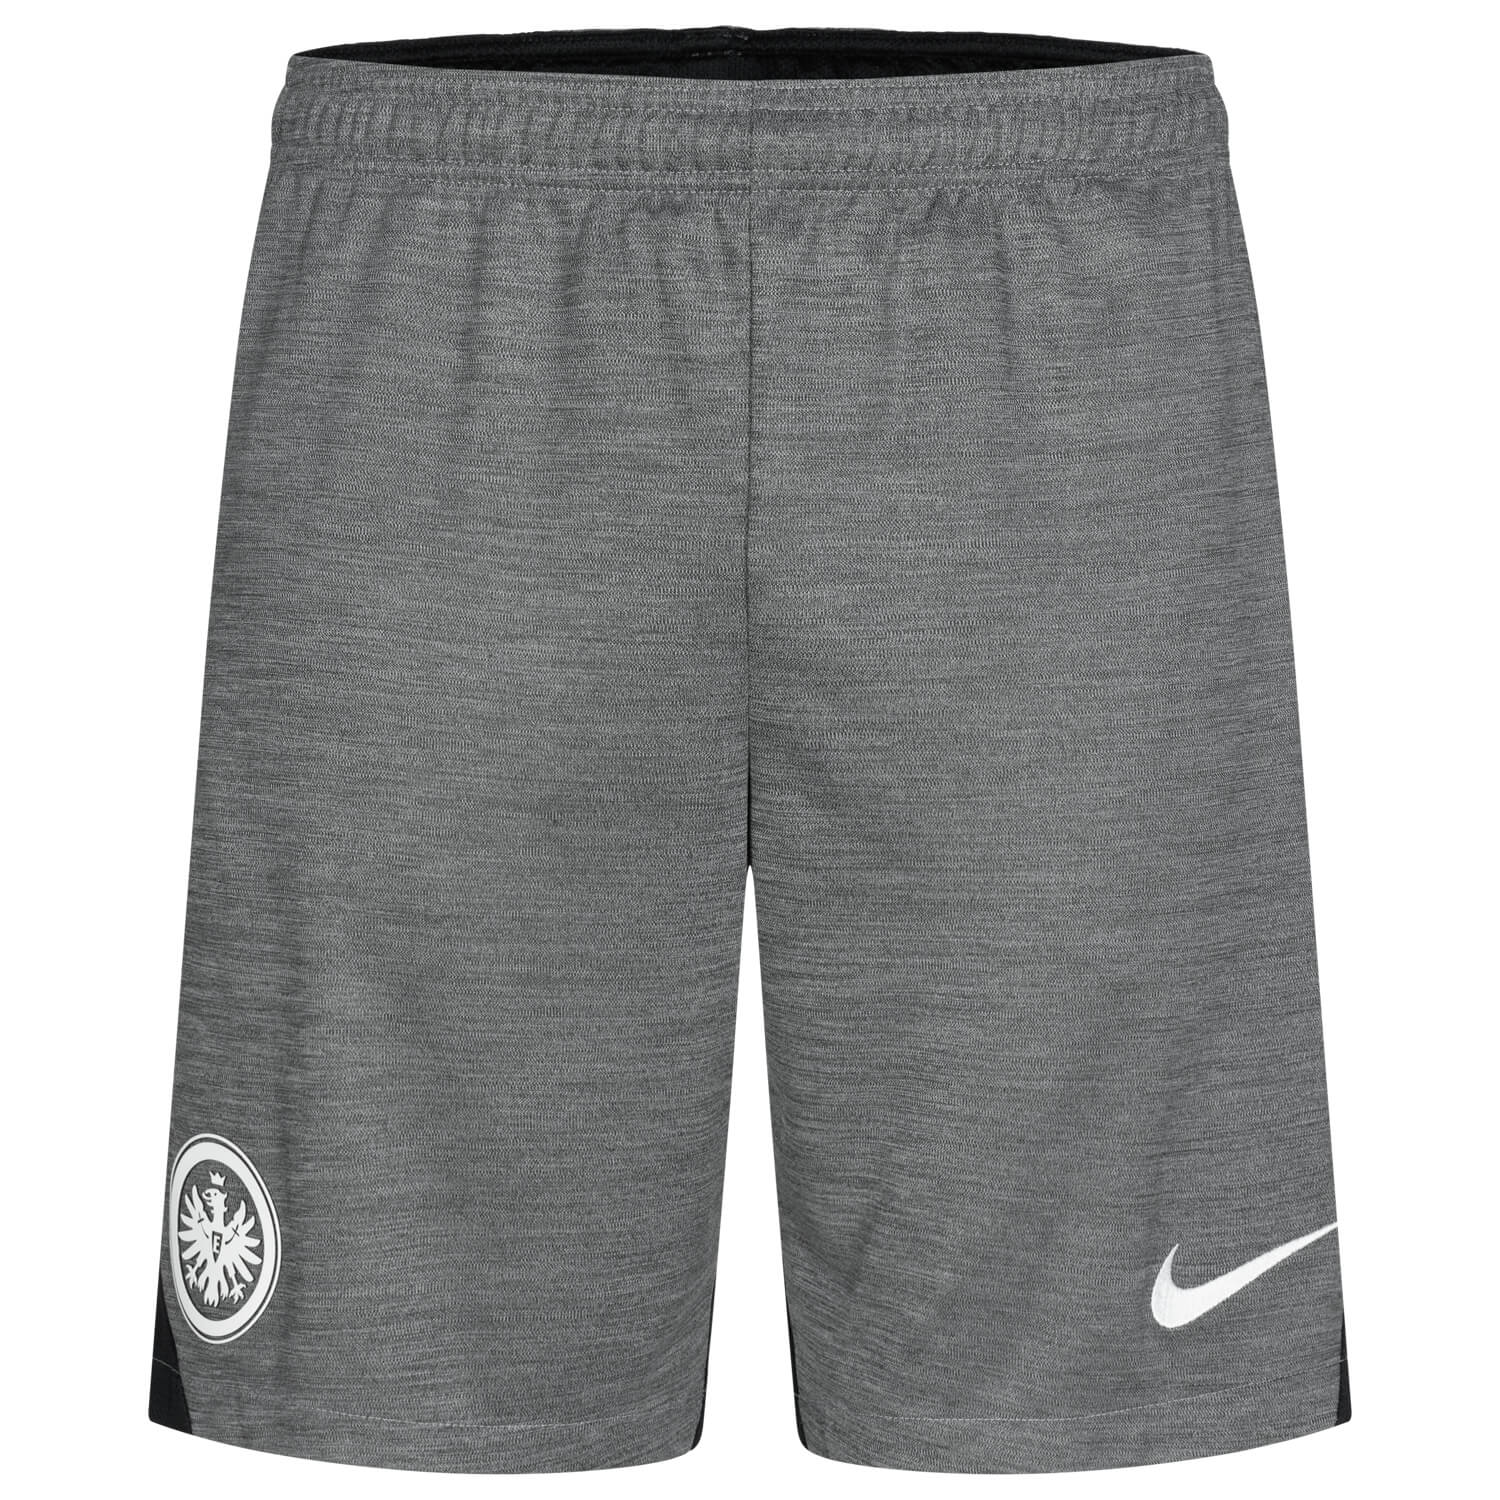 Bild 1: Nike Sport-Shorts Grau